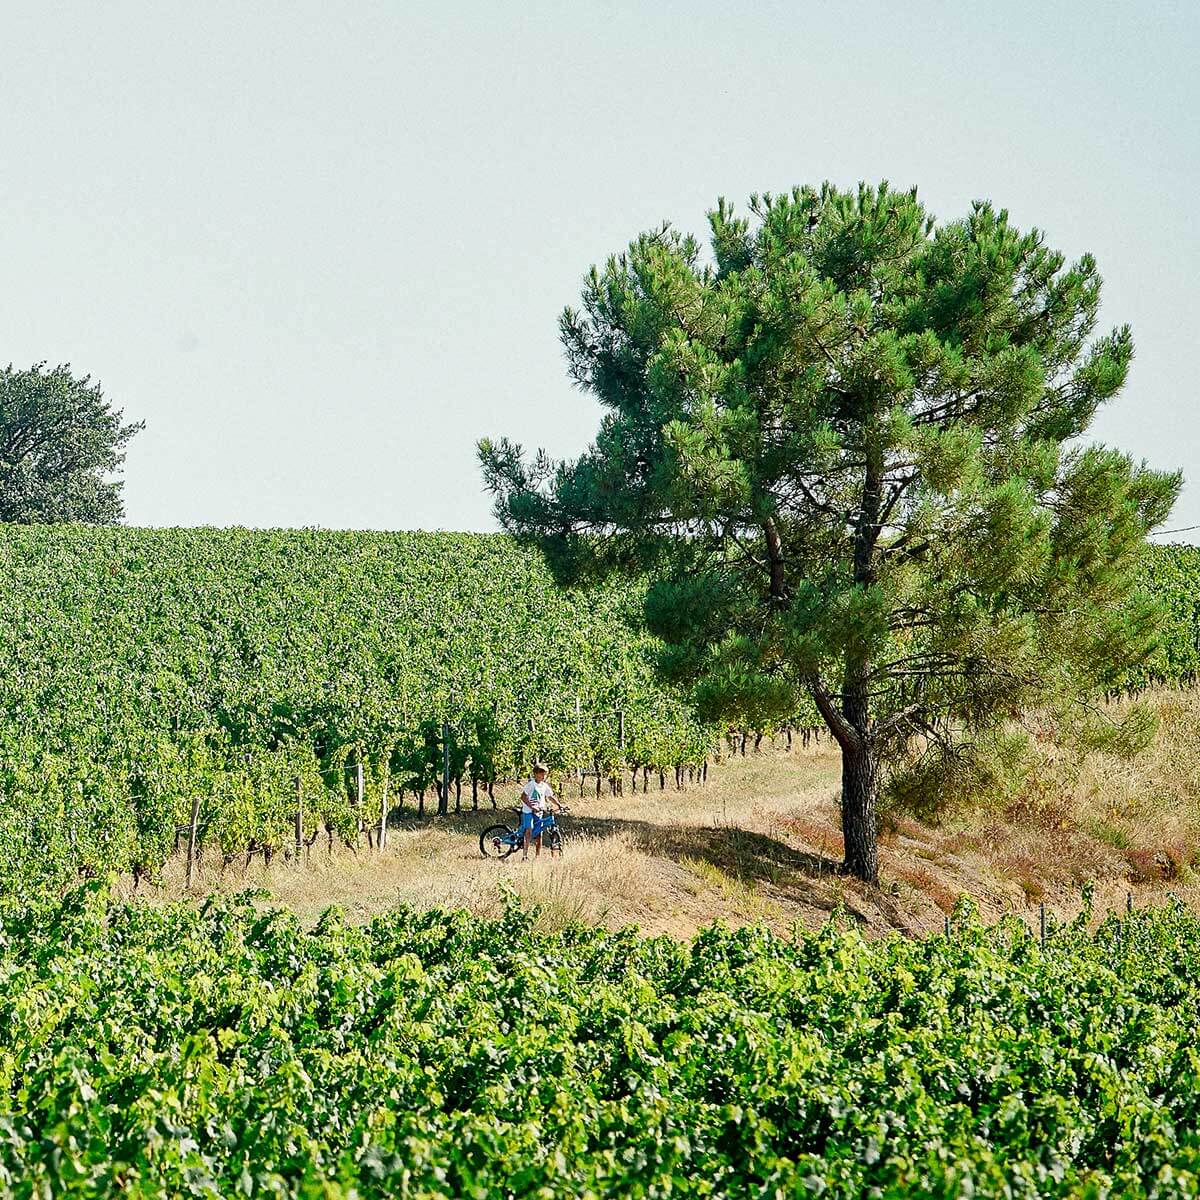 Prelude de Marsau vineyard